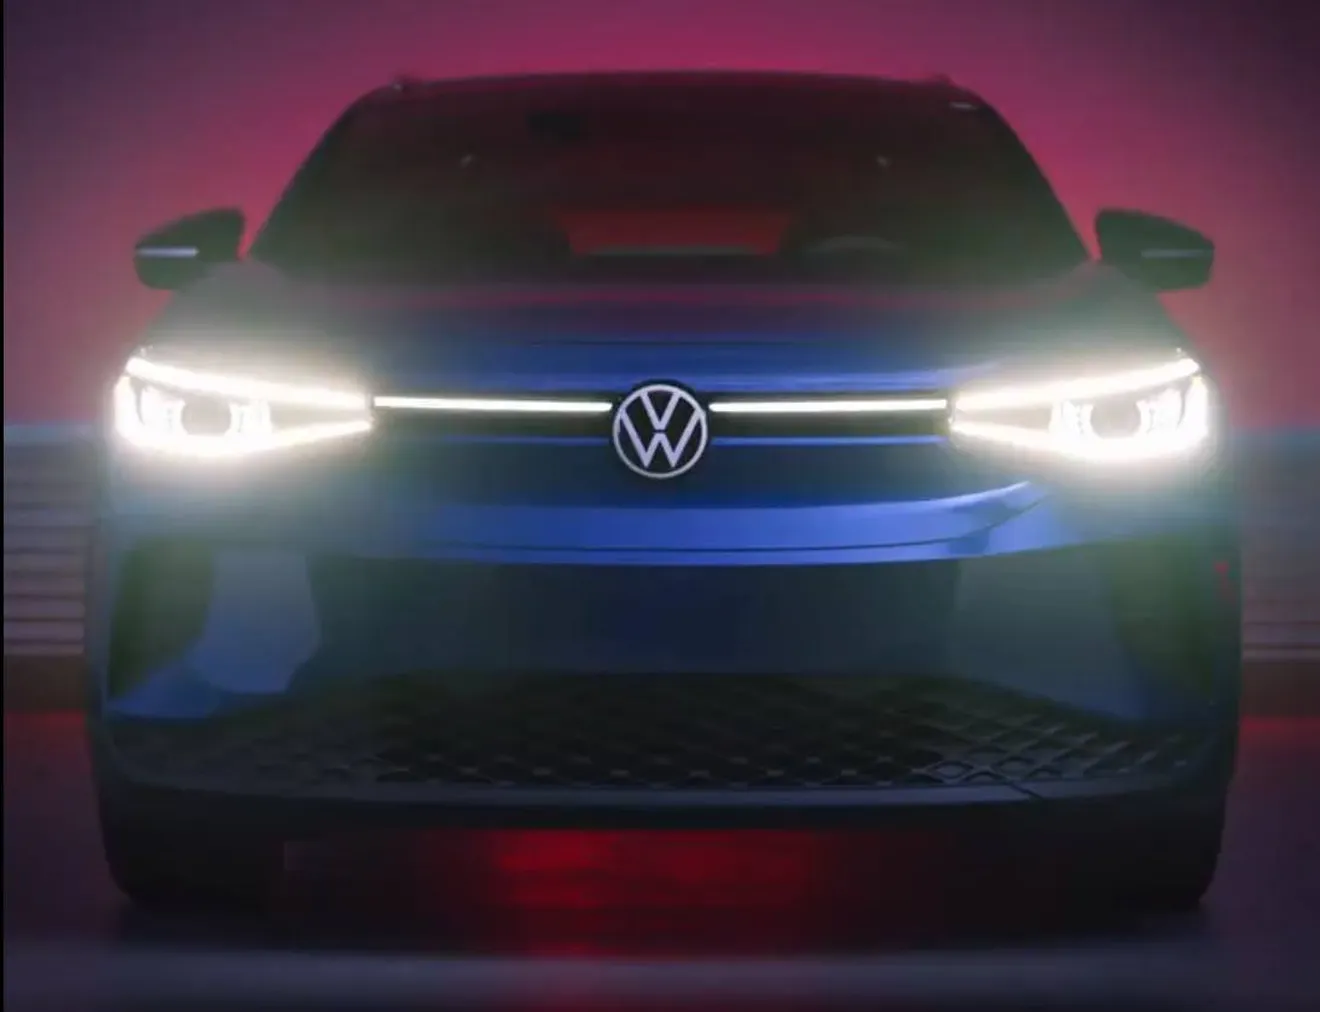 Volkswagen Estados Unidos desvela el frontal del nuevo ID.4 en un teaser más